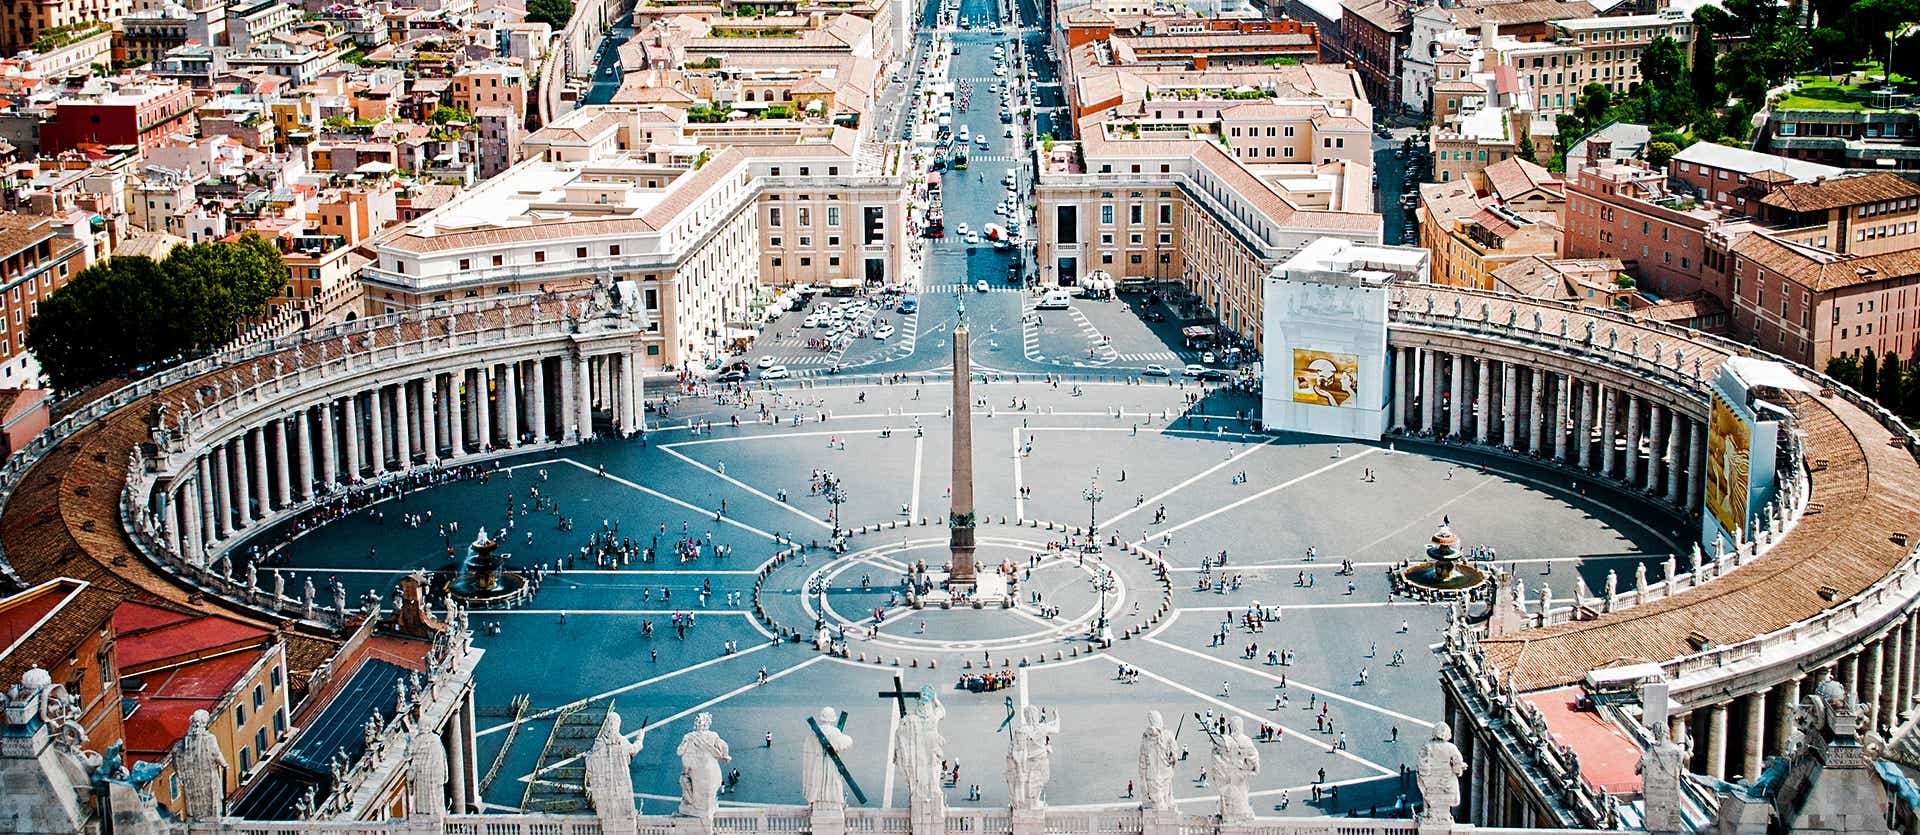 St. Peter's Square <span class="iconos separador"></span> Vatican City <span class="iconos separador"></span> Rome